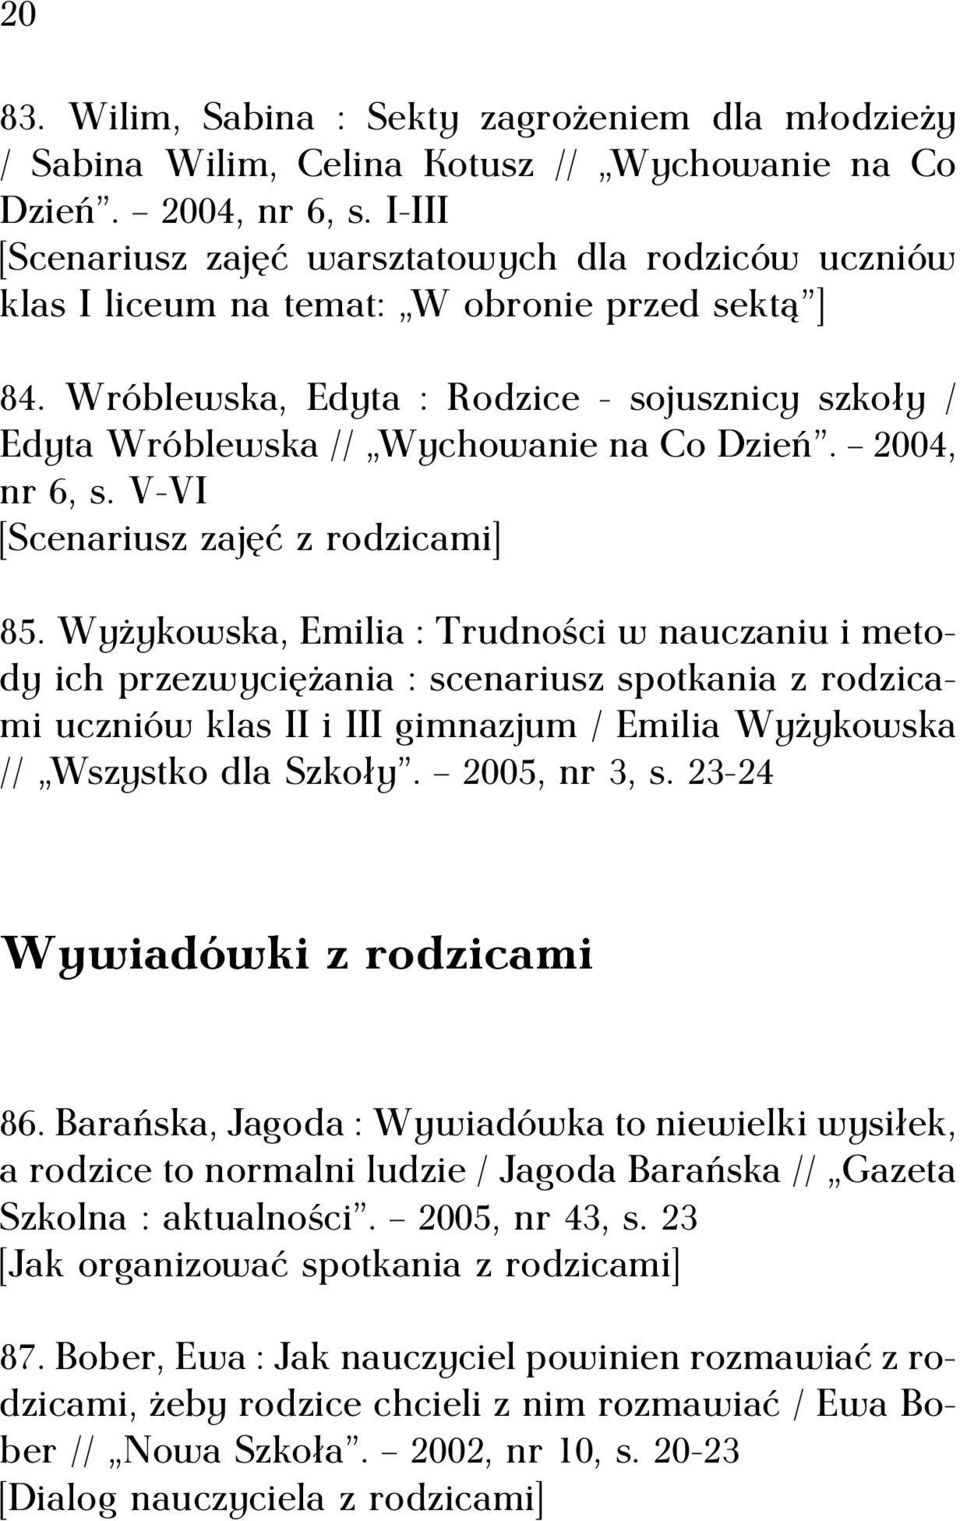 Wróblewska, Edyta : Rodzice - sojusznicy szkoły / Edyta Wróblewska // Wychowanie na Co Dzień. 2004, nr 6, s. V-VI [Scenariusz zajęć z rodzicami] 85.